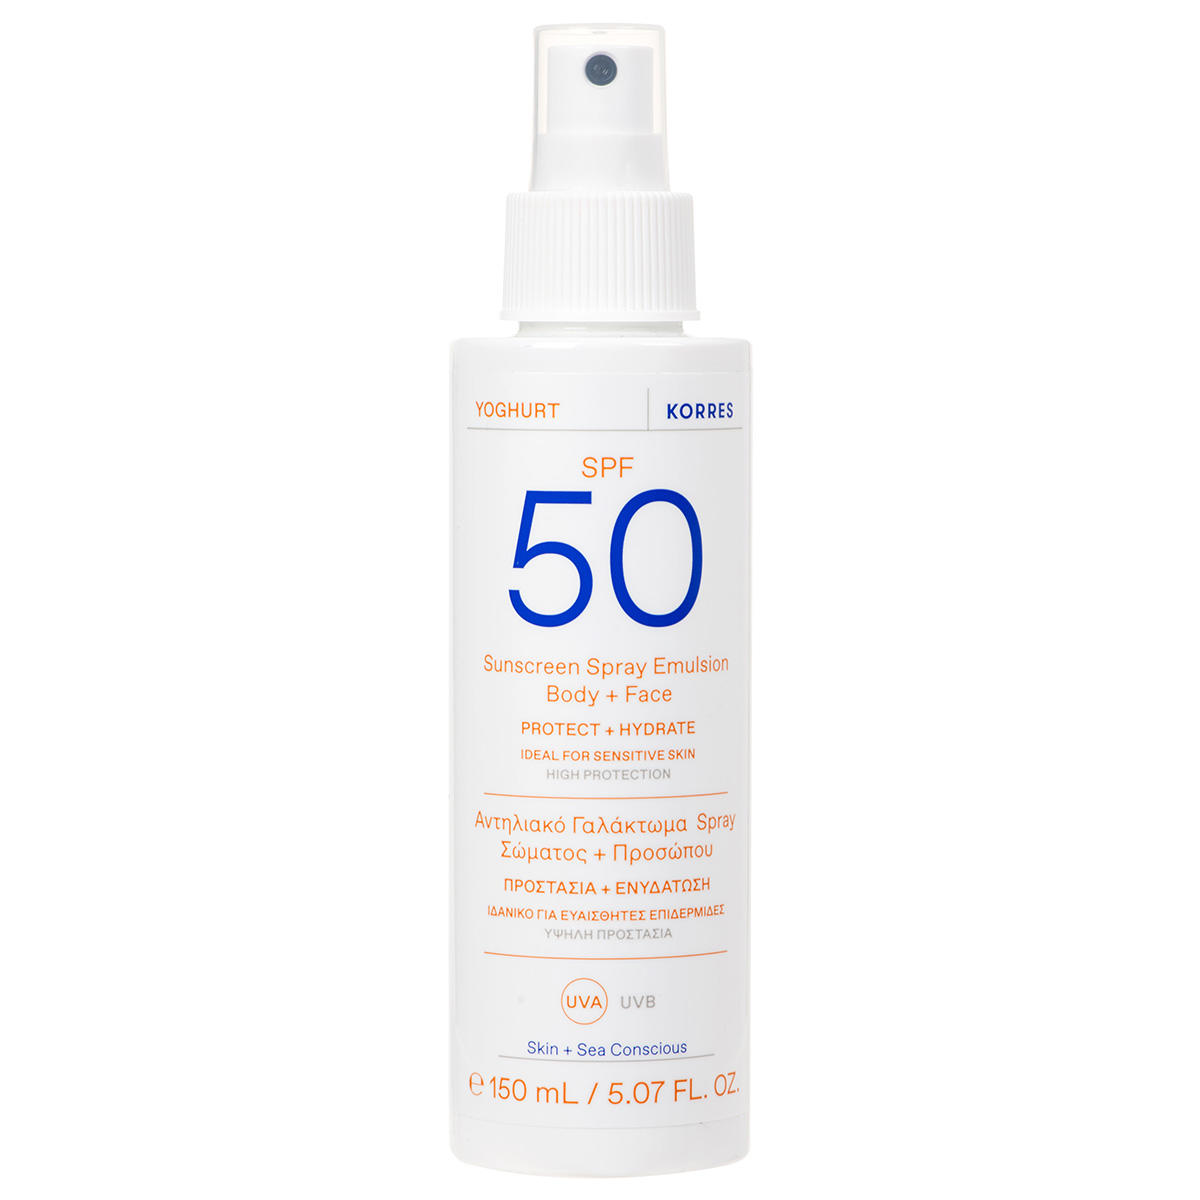 KORRES Yoghurt Sunscreen Spray Emulsion Face + Body SPF 50 150 ml - 1